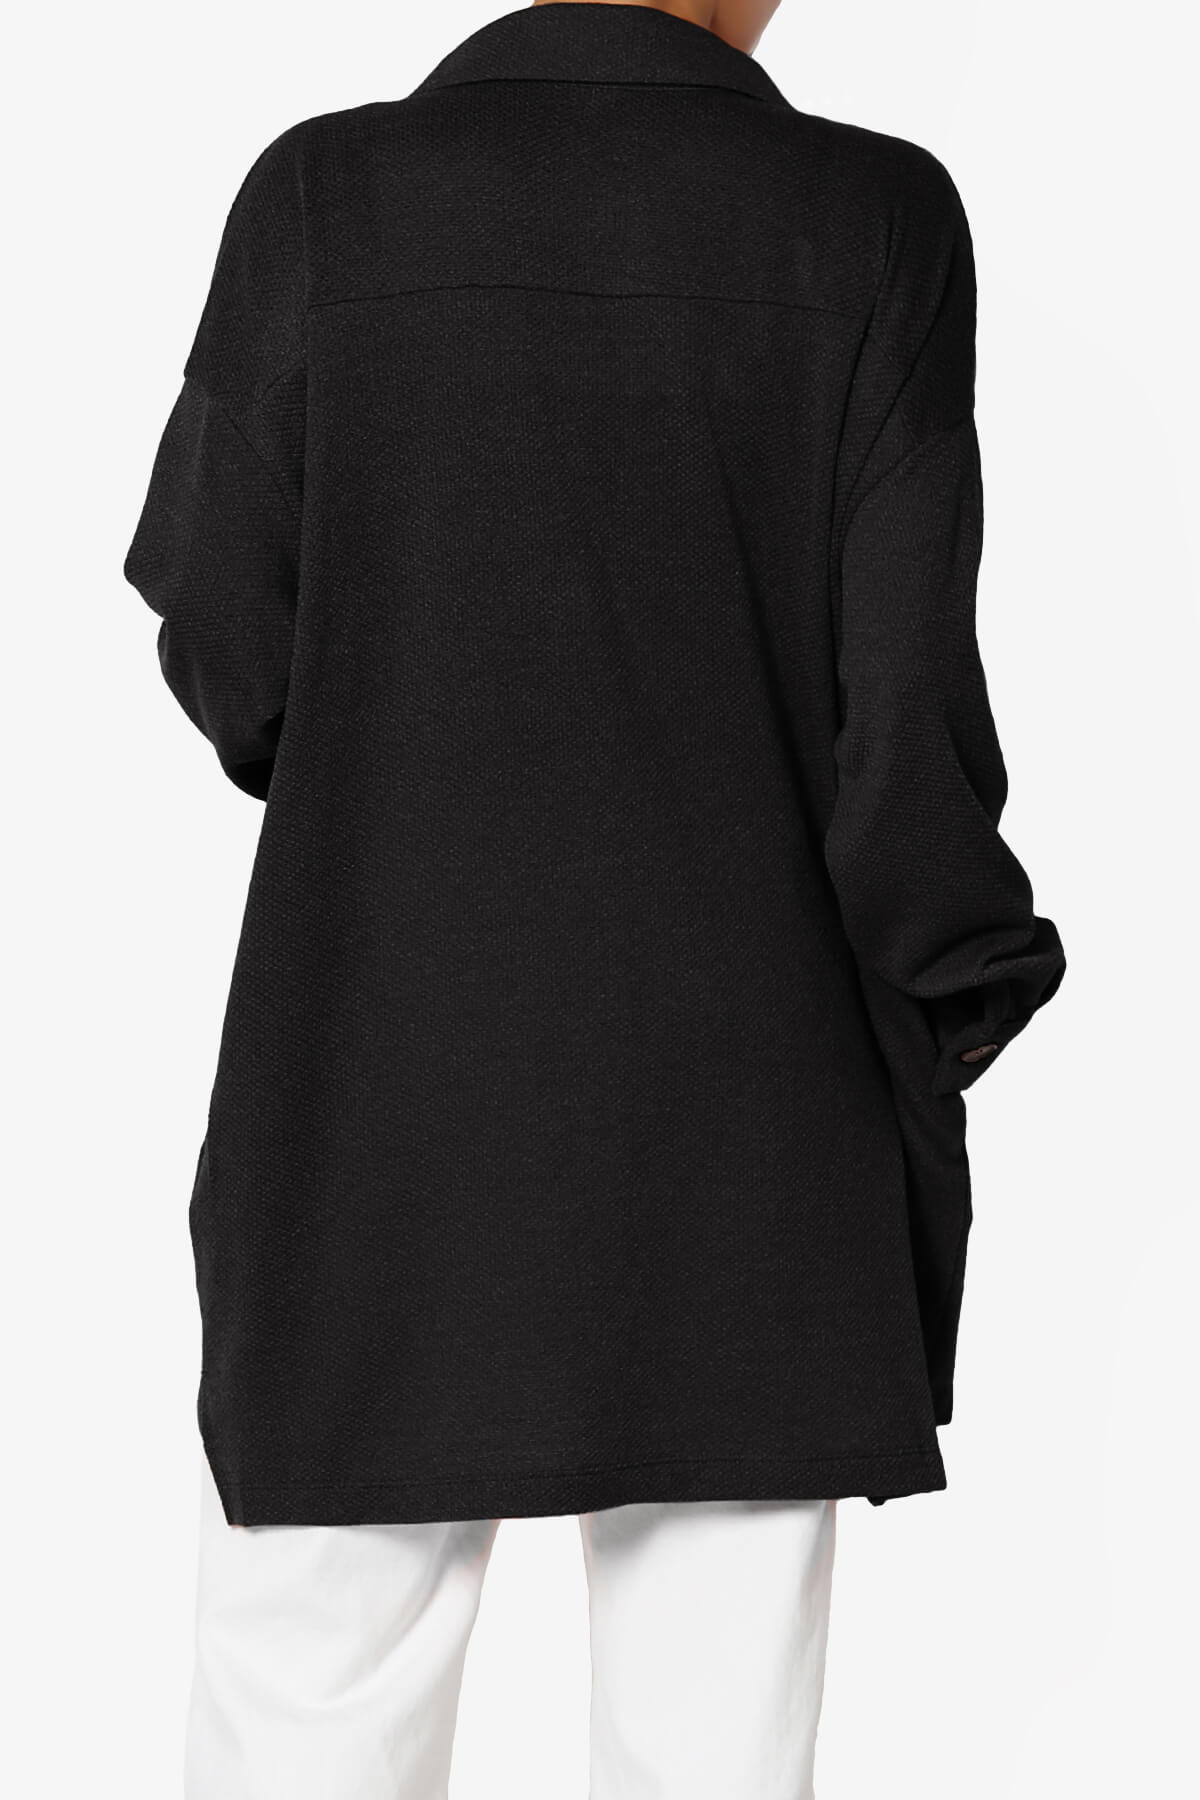 Matryx Jacquard Oversized Shirts Shacket BLACK_2